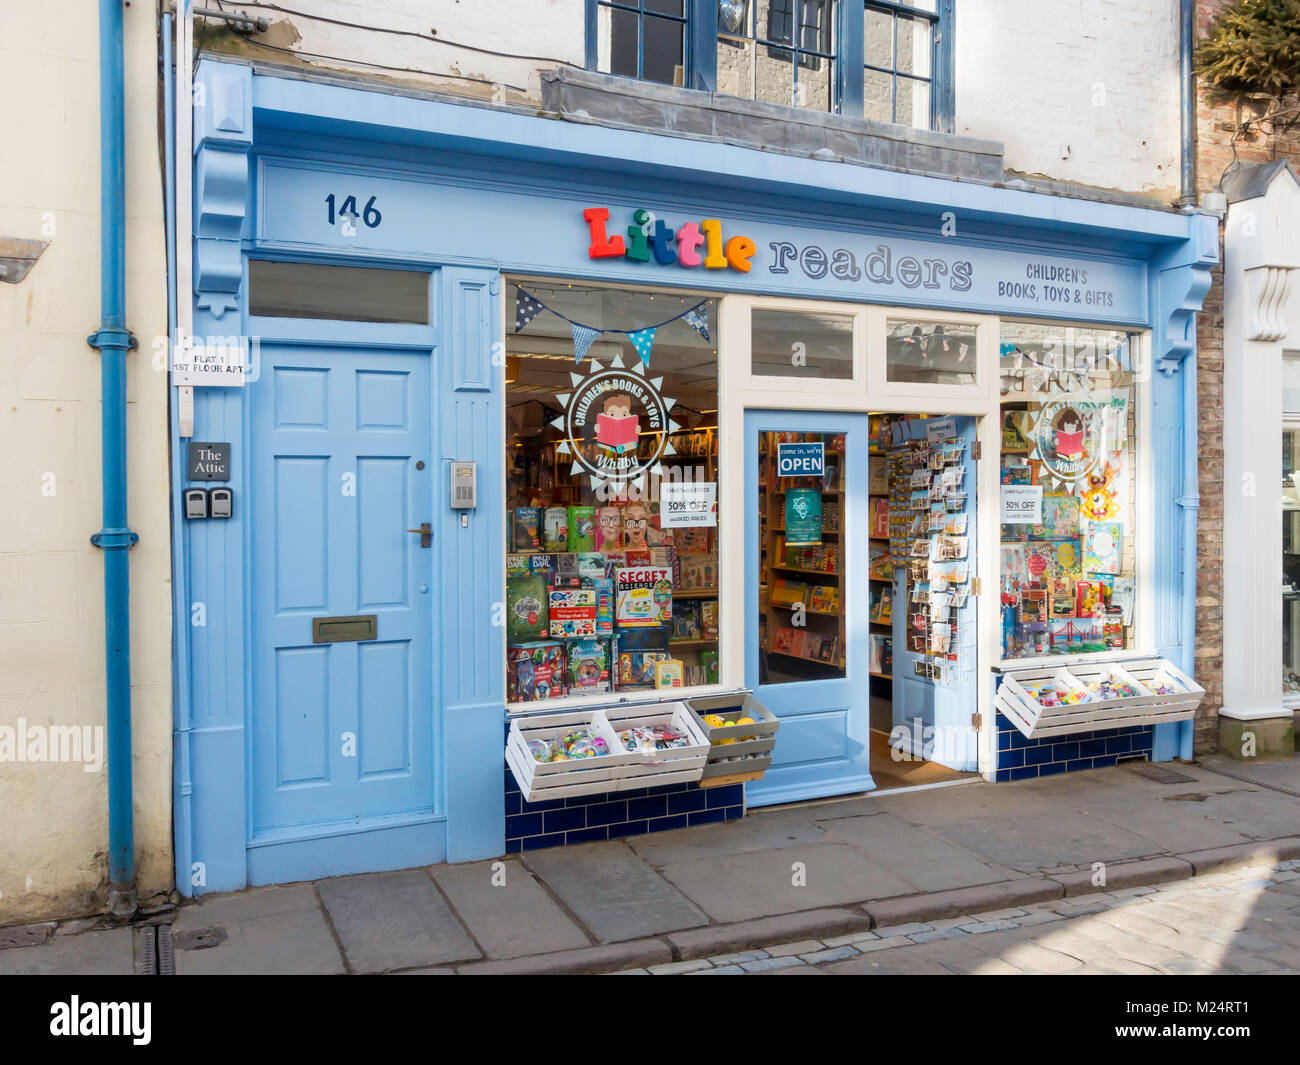 Wenig Reader's ist ein Kinderbuch und Toy Shop in der Church Street whitby, North Yorkshire England Stockfoto